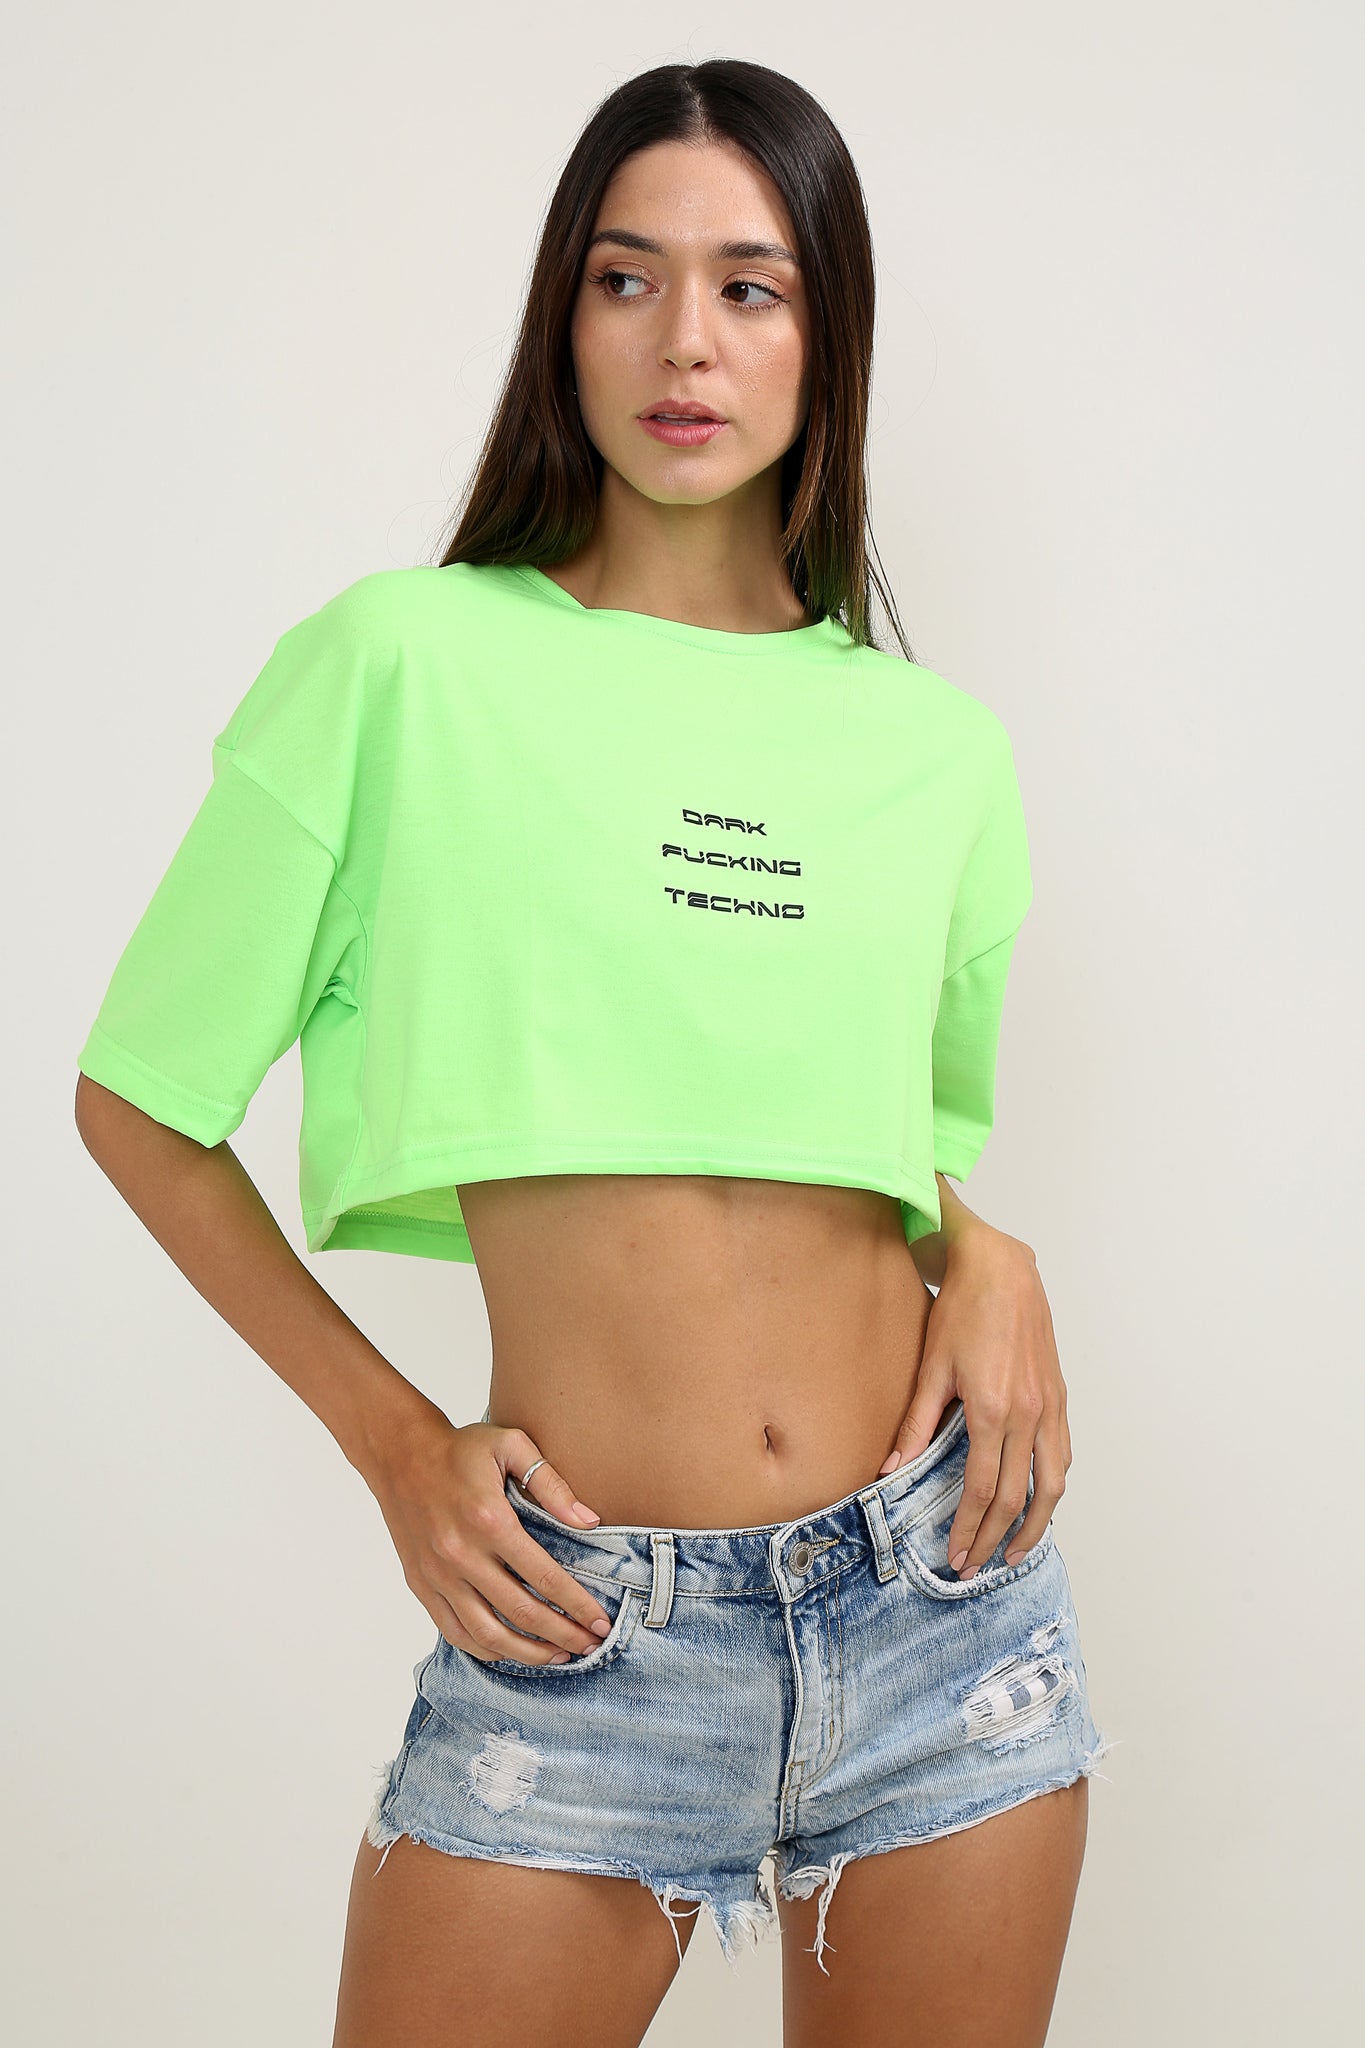 Dark Fcking Techno Oversize Neon Yeşil Crop-Top Kadın T-Shirt